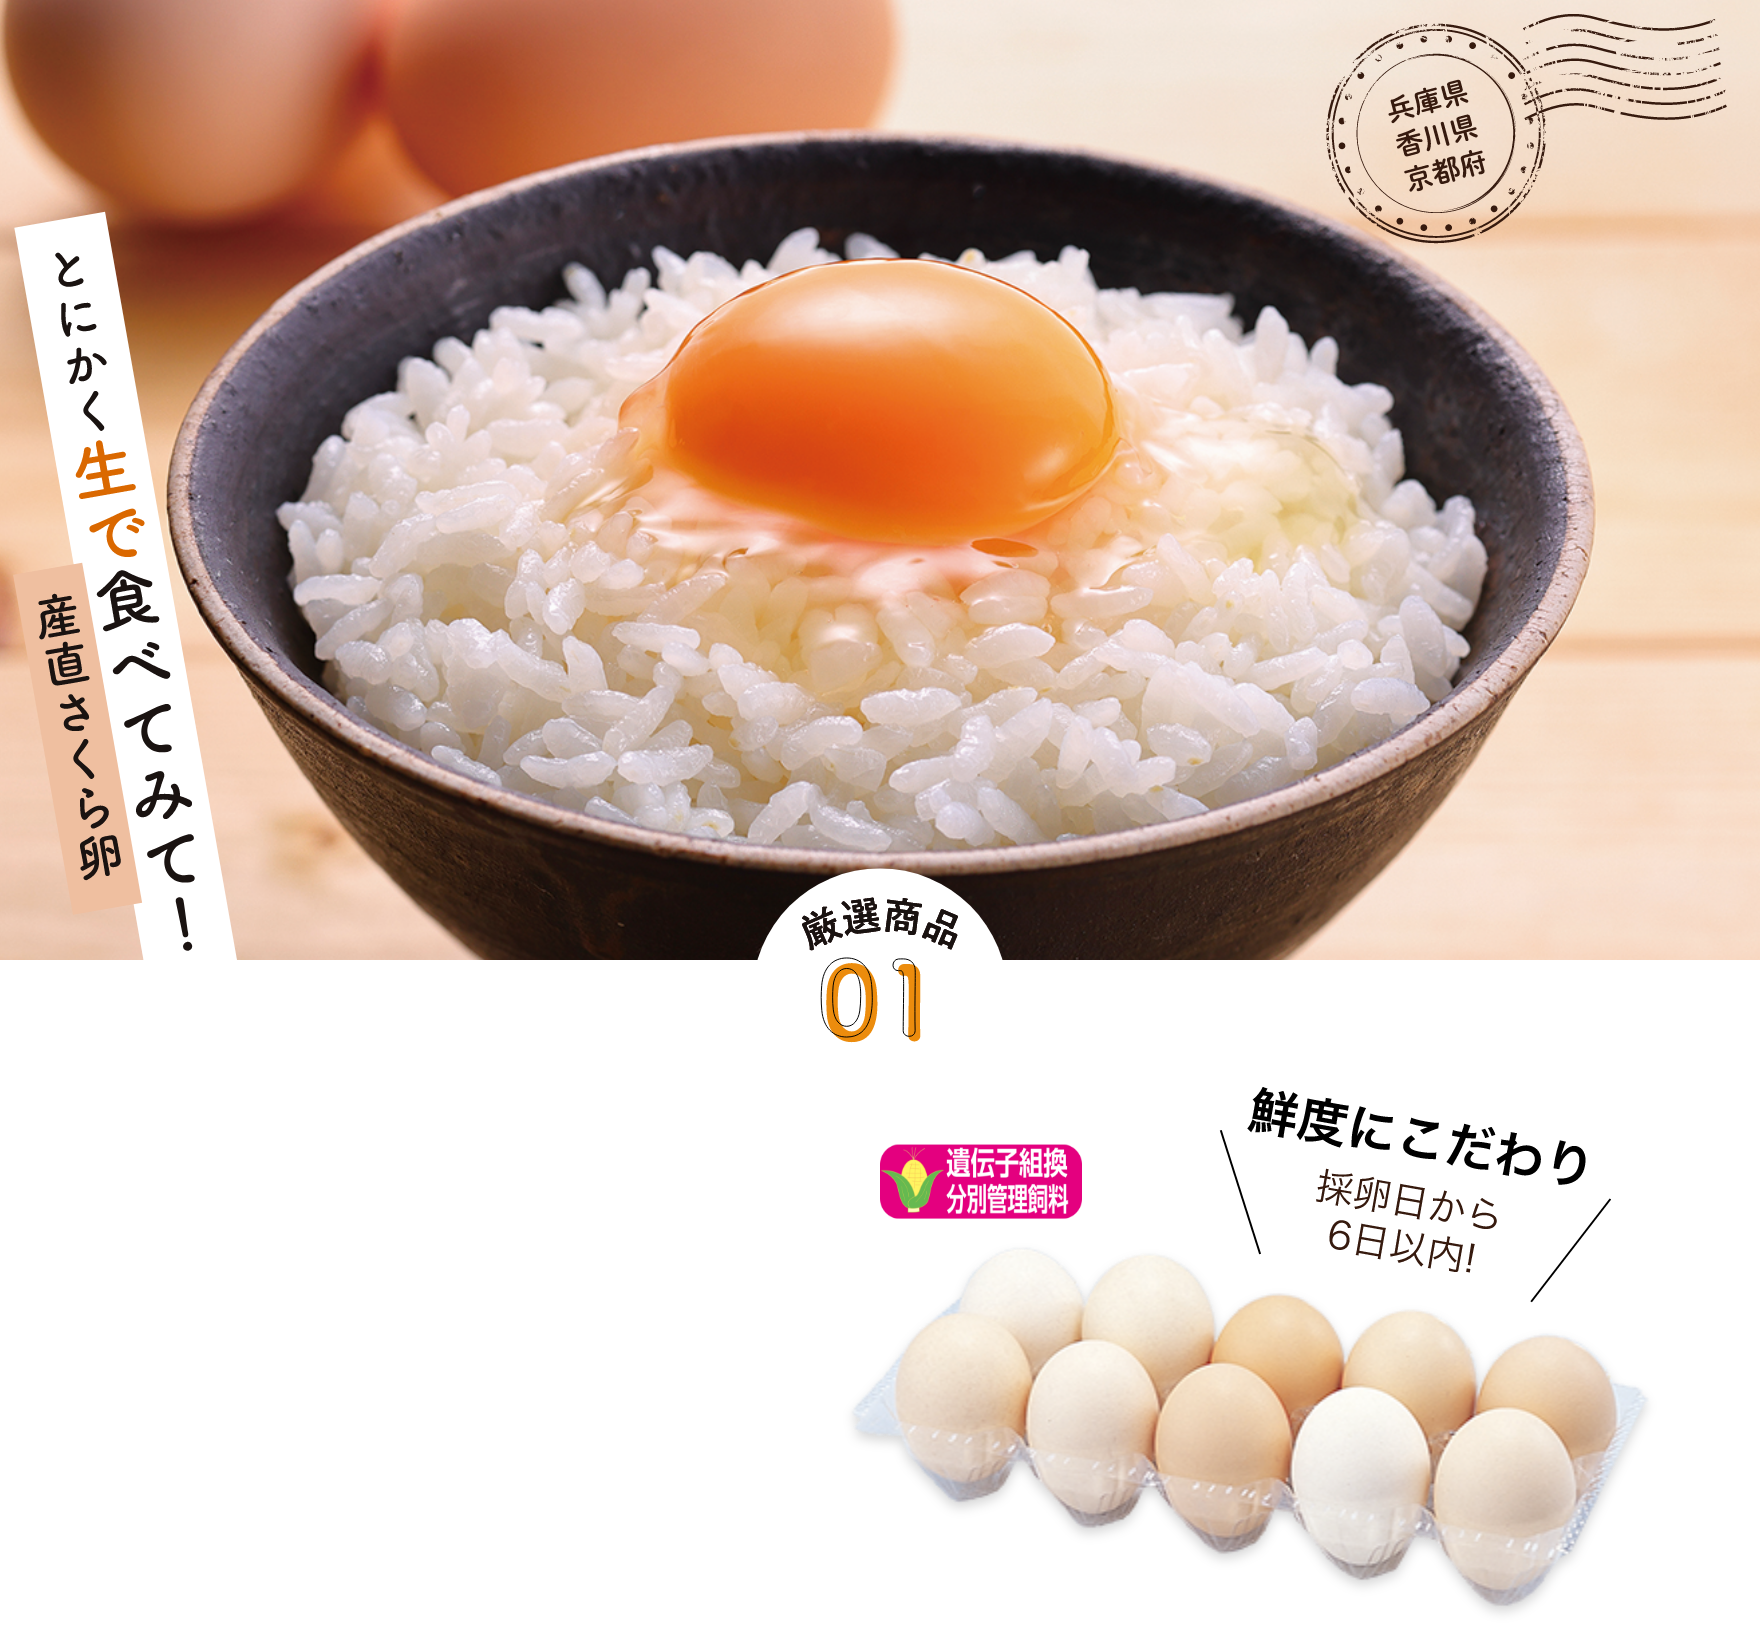 兵庫県香川県京都府産直さくら卵　とにかく生で食べてみて！厳選商品01鮮度にこだわり採卵日から6日以内!